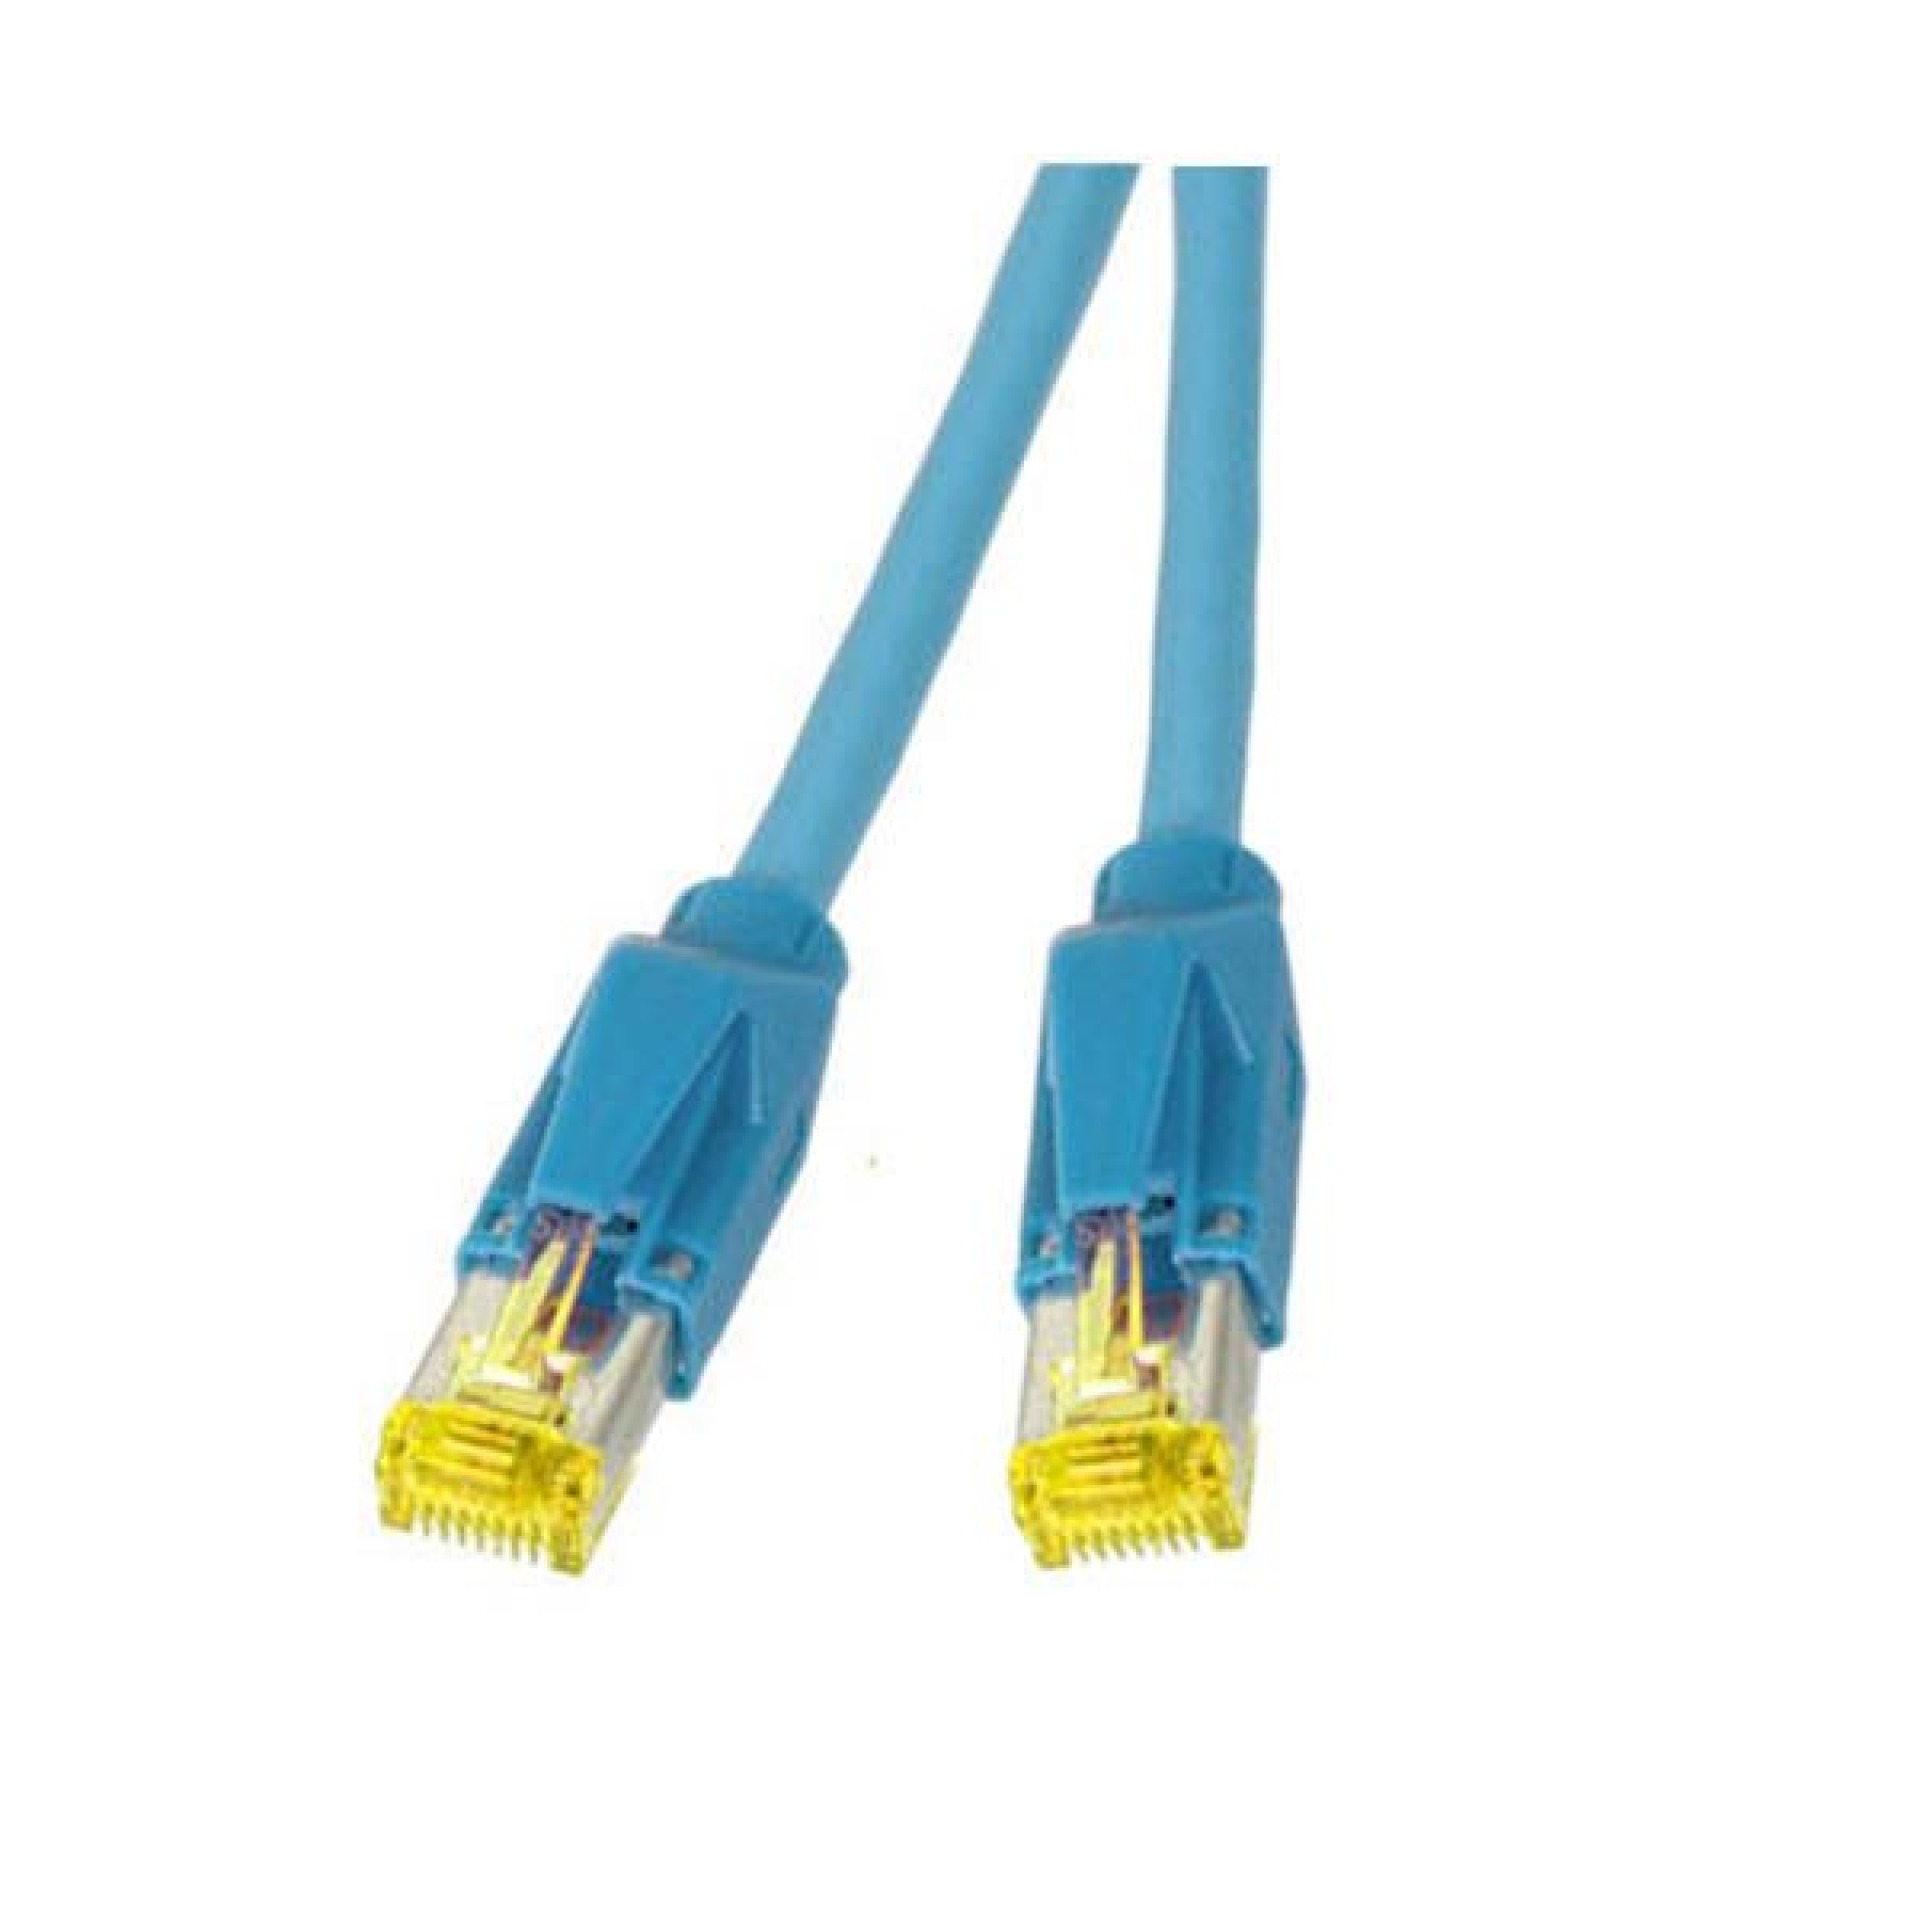 RJ45 Patch cable S/FTP, Cat.6A, TM31, Dätwyler 7702, 0,5m, blue